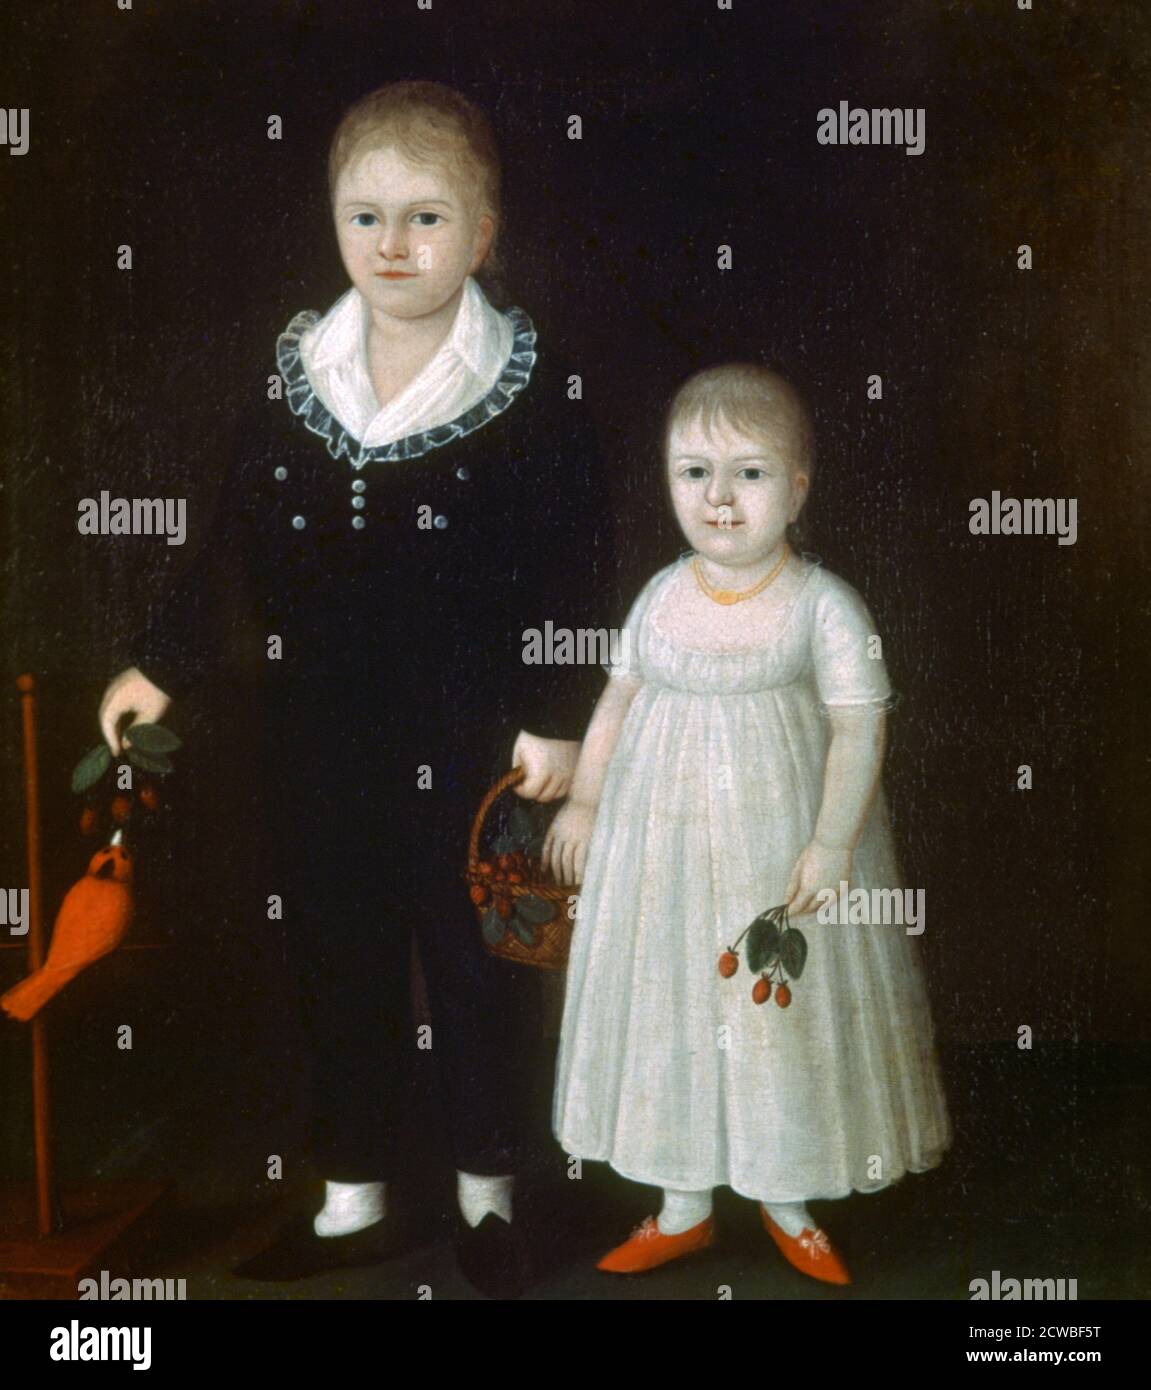 Edward und Sarah Rutter', c1805. Künstler: Joshua Johnson. Joshua Johnson (1763-1832) war ein amerikanischer Maler. Johnson ist bekannt für seine naiven Gemälde prominenter Einwohner Marylands. Stockfoto